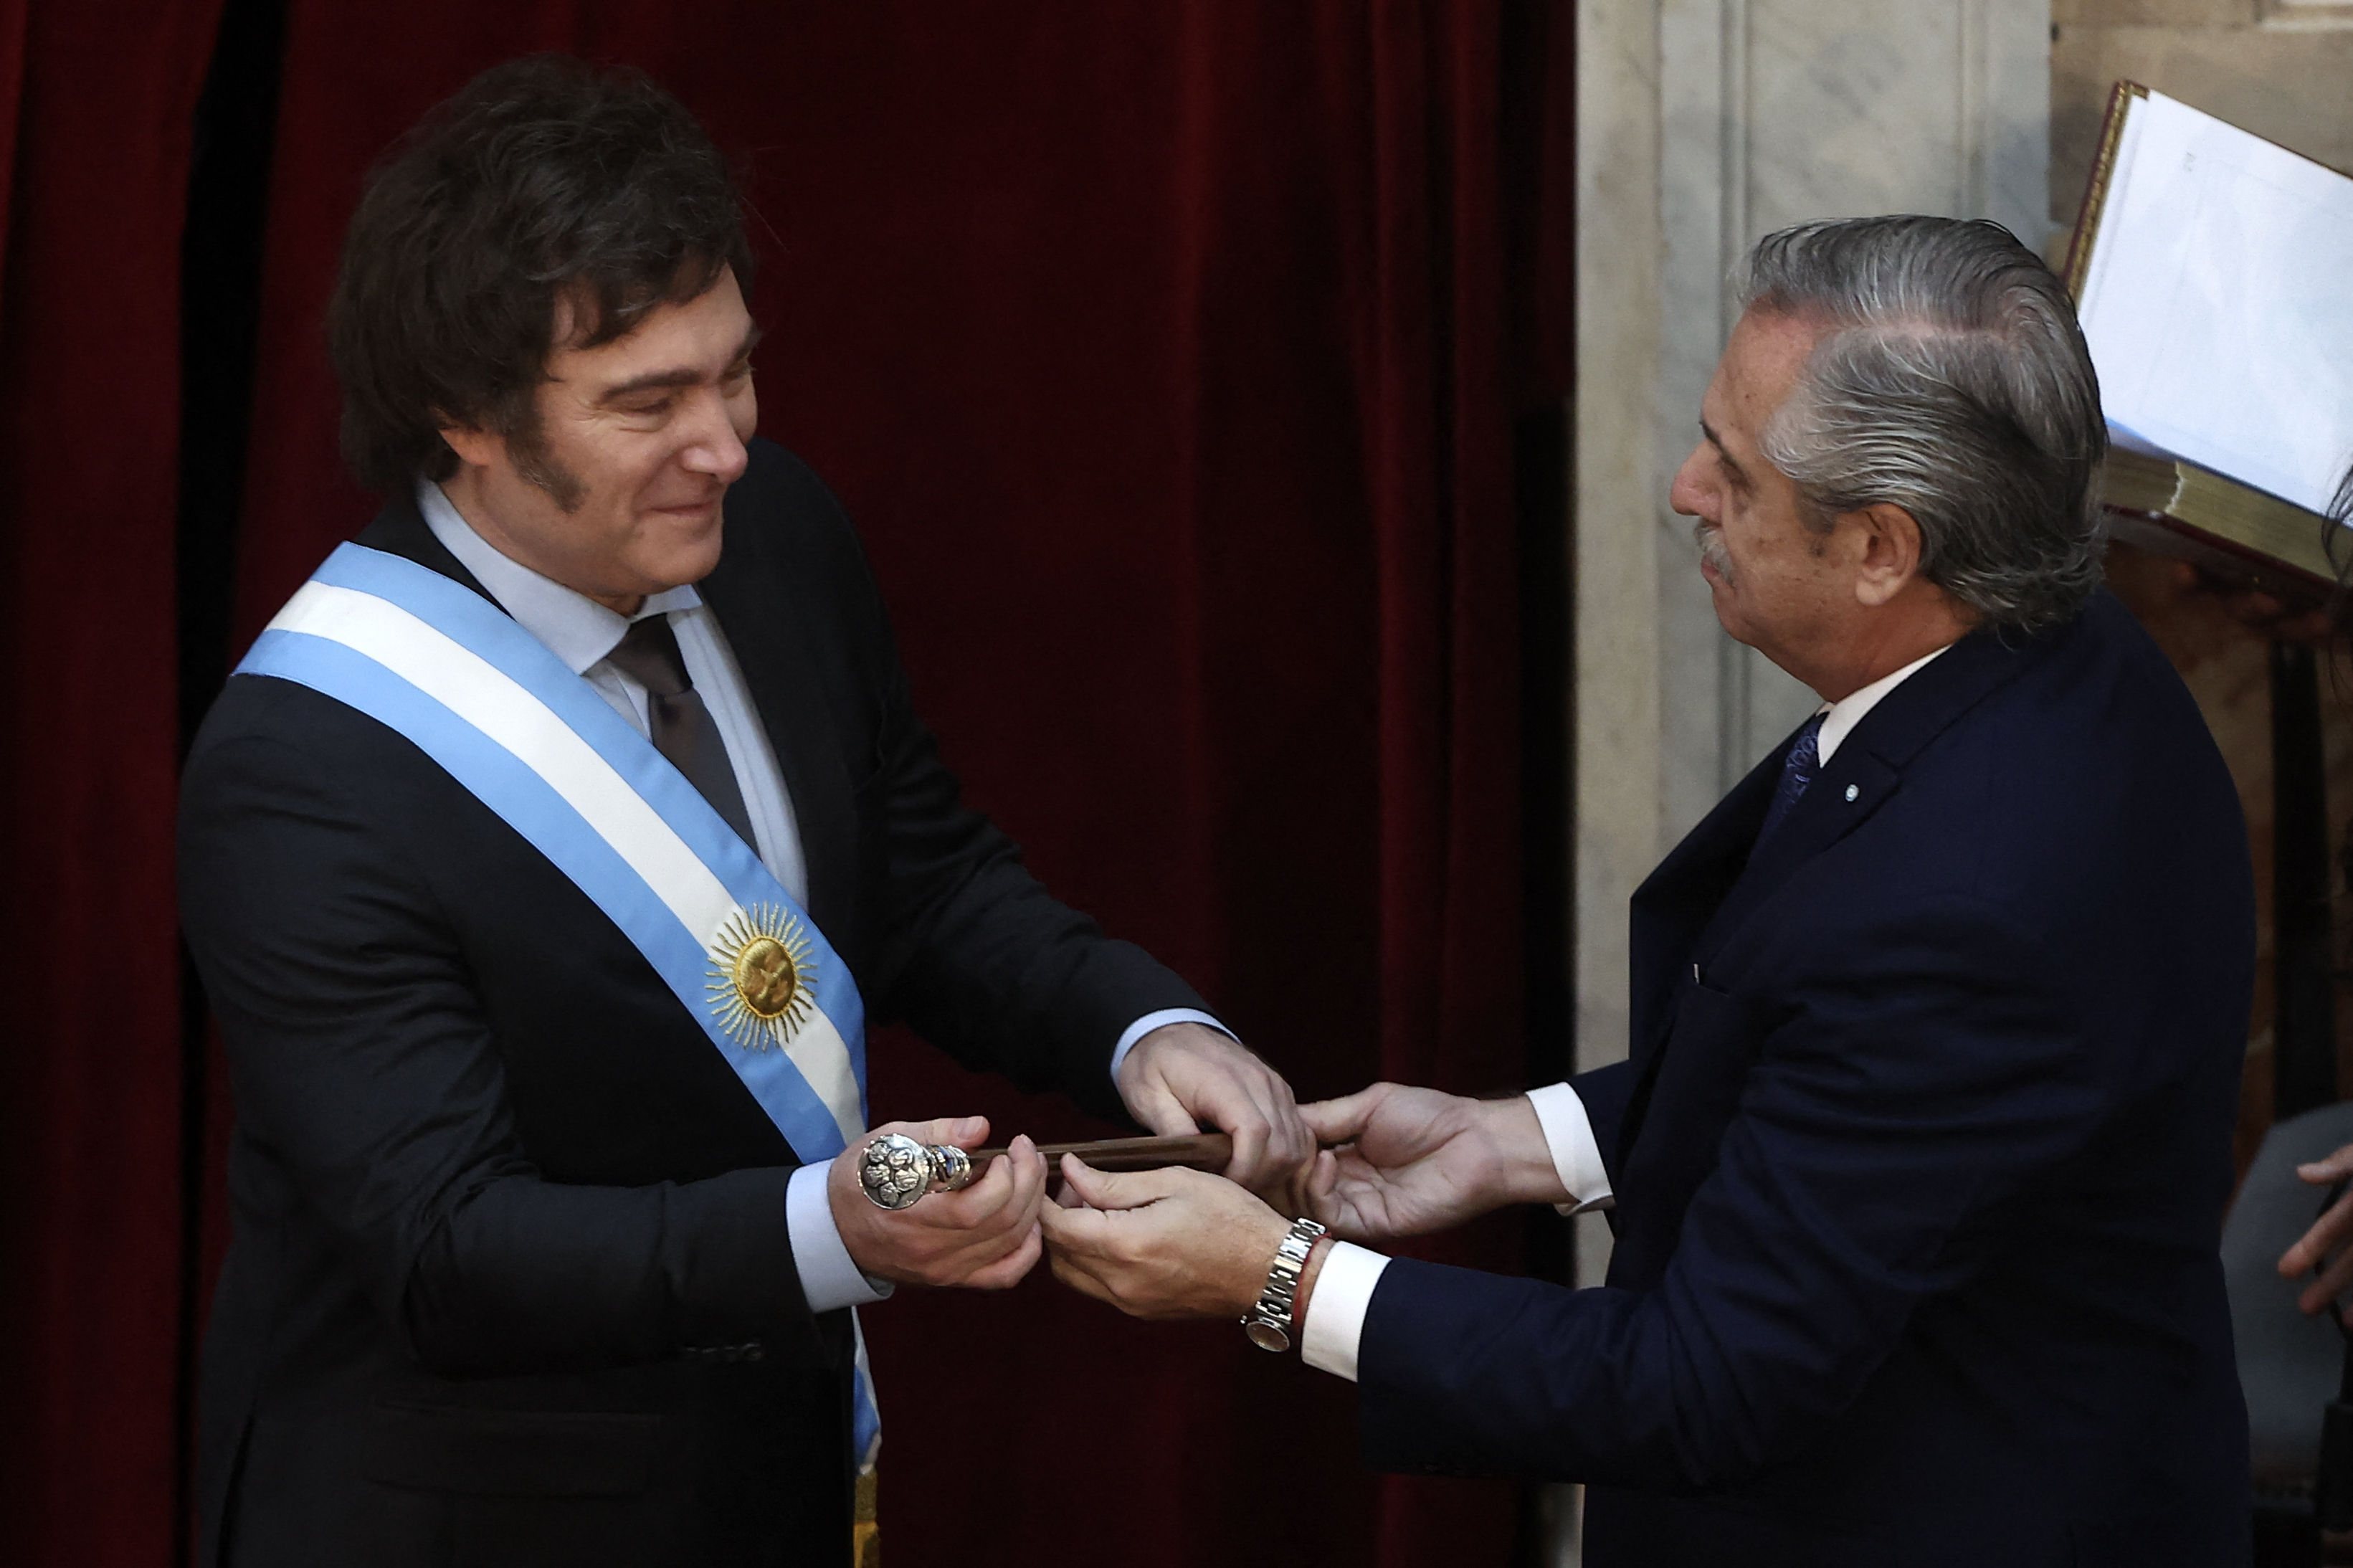 EN VIDEO: Alberto Fernández traspasa la banda presidencial y el bastón a Javier Milei, presidente de Argentina